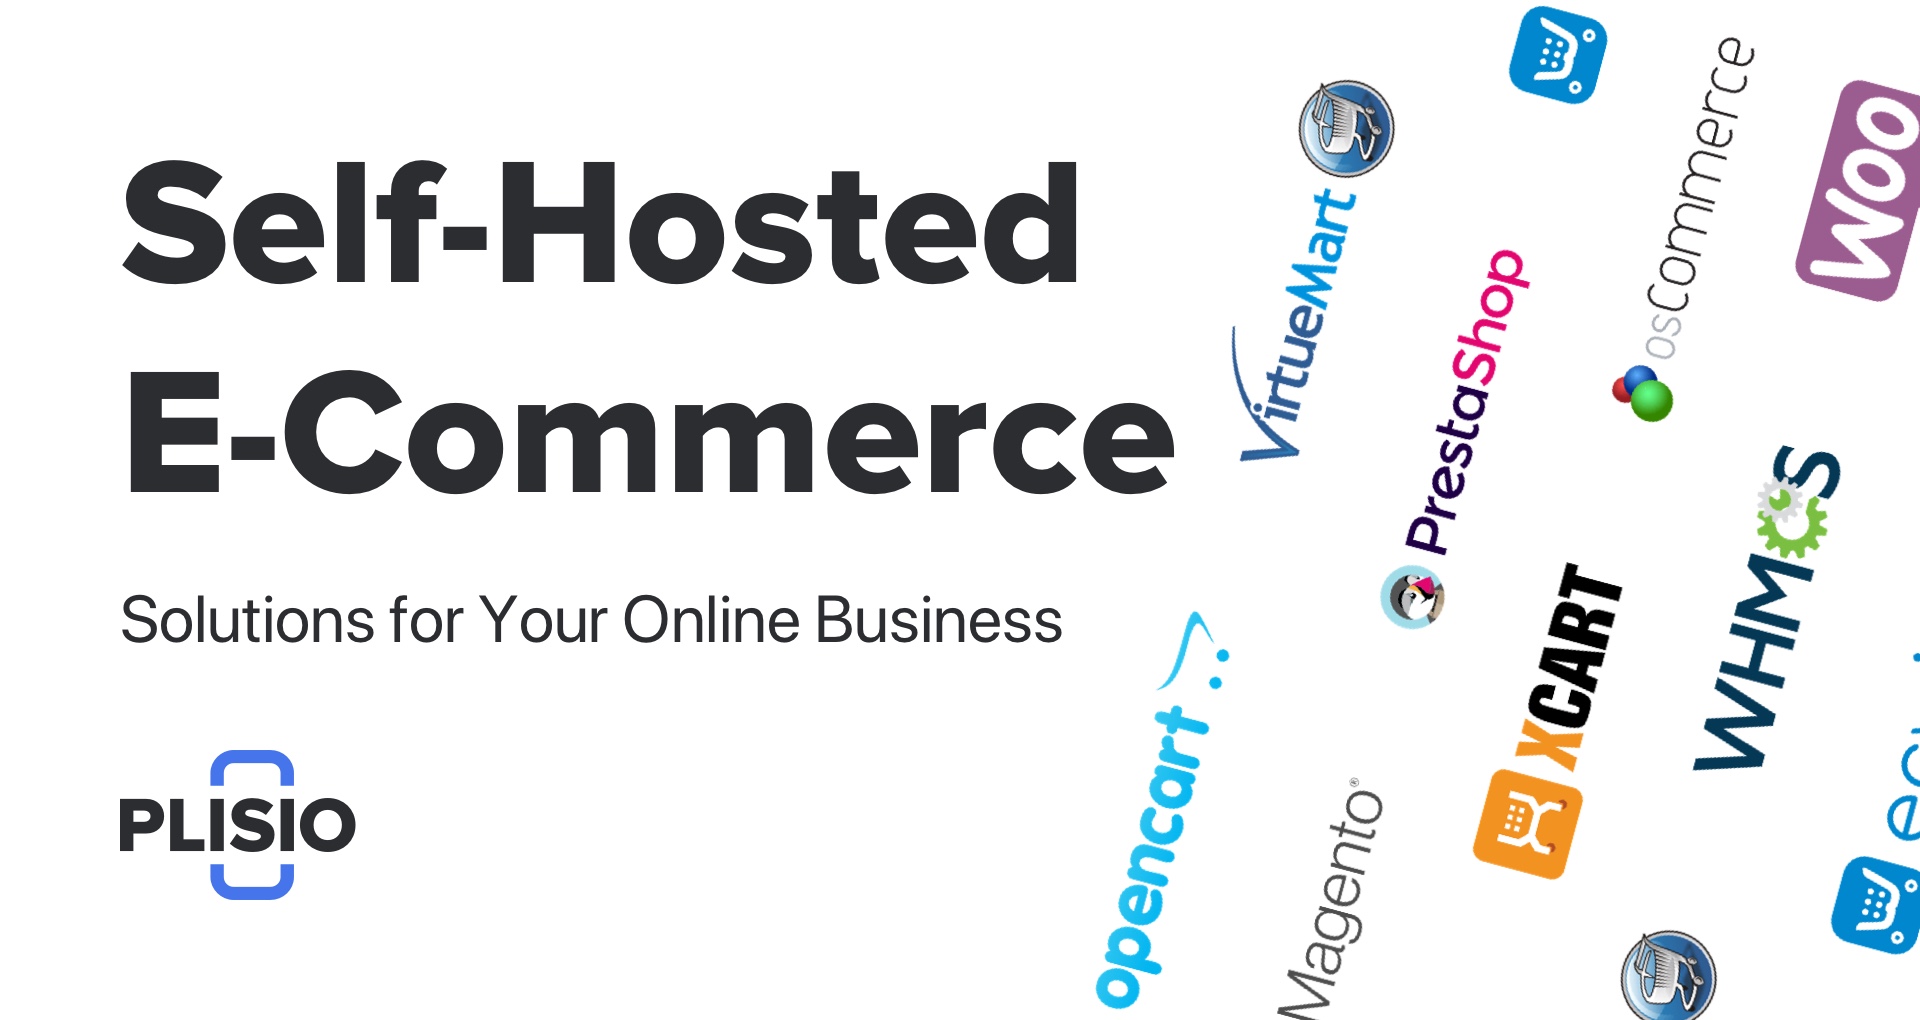 Le migliori soluzioni di e-commerce self-hosted per il tuo business online